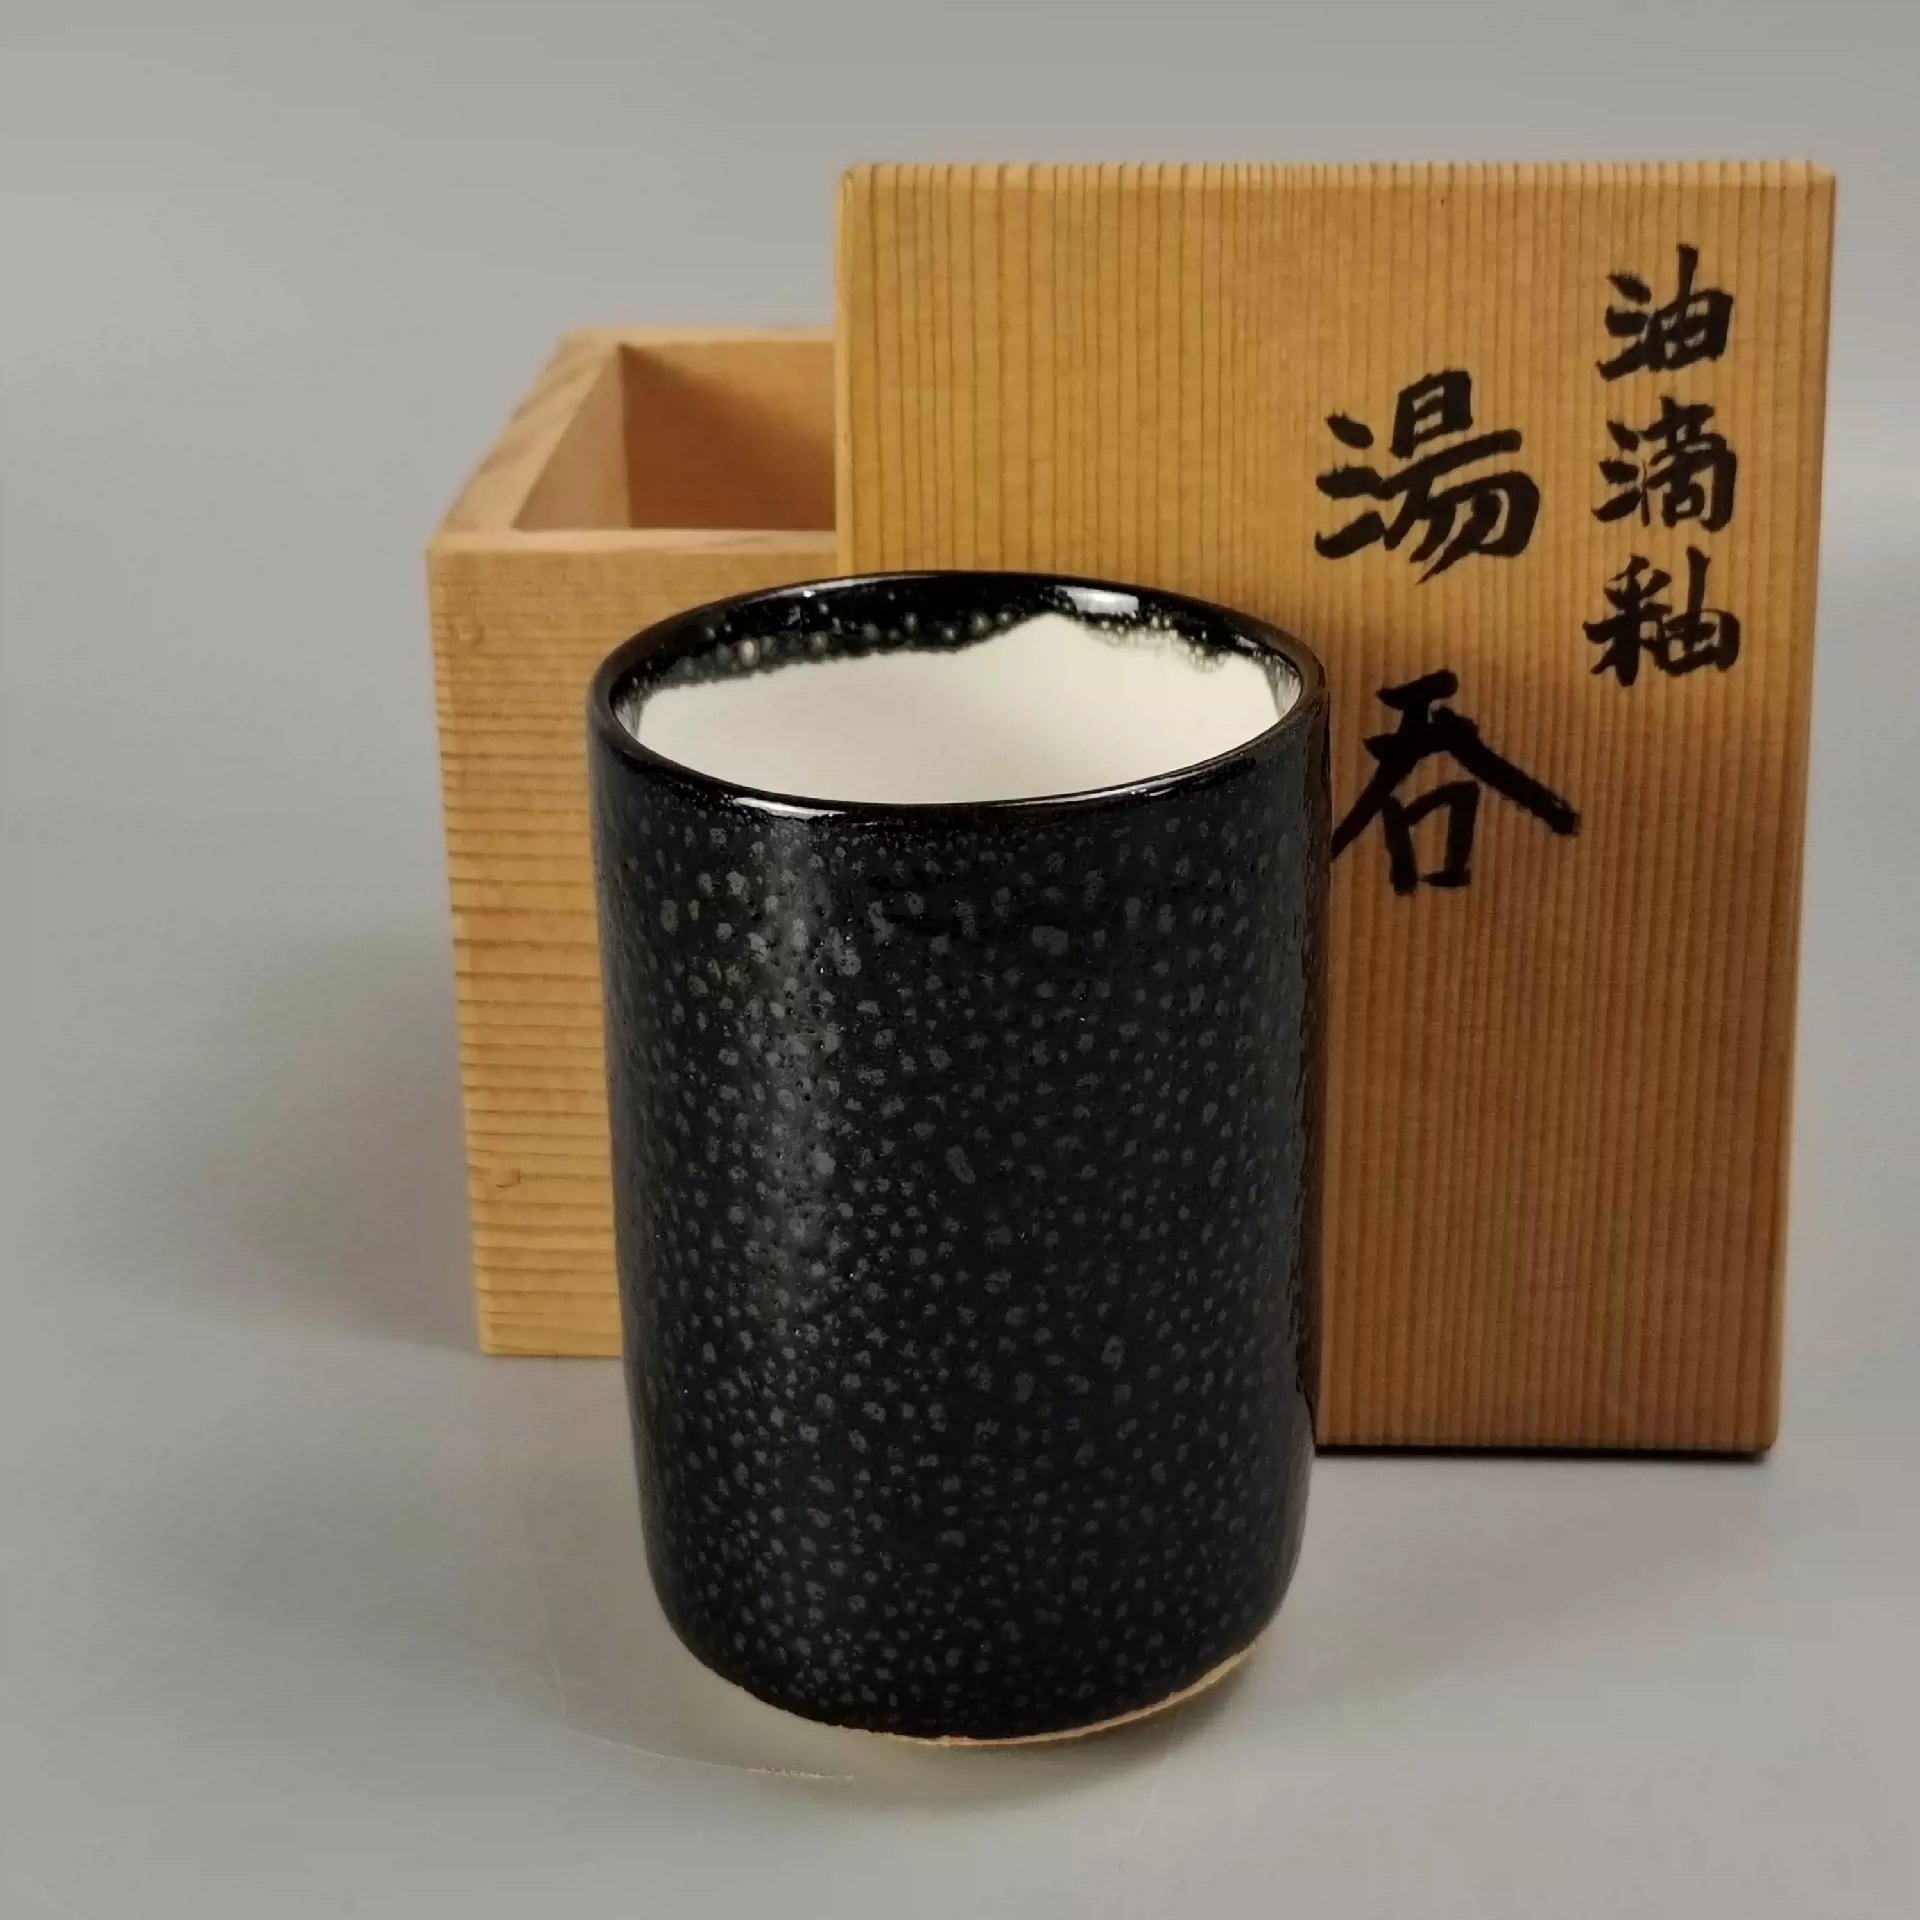 1000元。清水卯一造日本清水烧油滴天目釉茶碗。未使用品带-Taobao